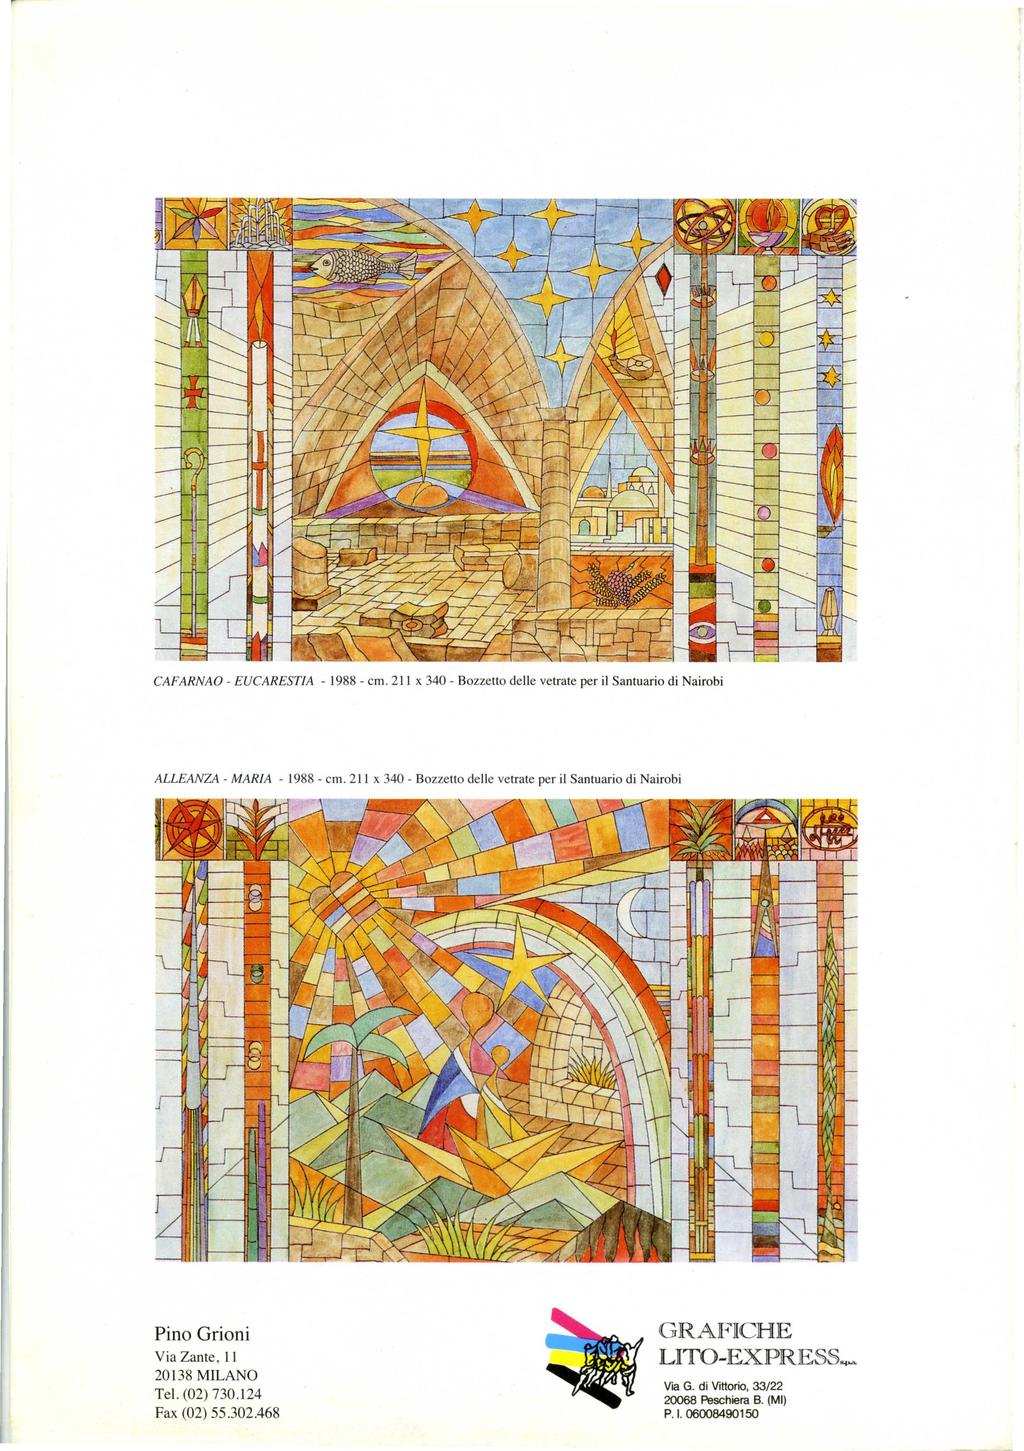 CAFARNAO - EUCARESTIA - 1988 - cm. 2 11 x 340 - Bozzetto delle vetrate per il Santuario di Nairobi ALLEANZA - MARIA - 1988 - cm.